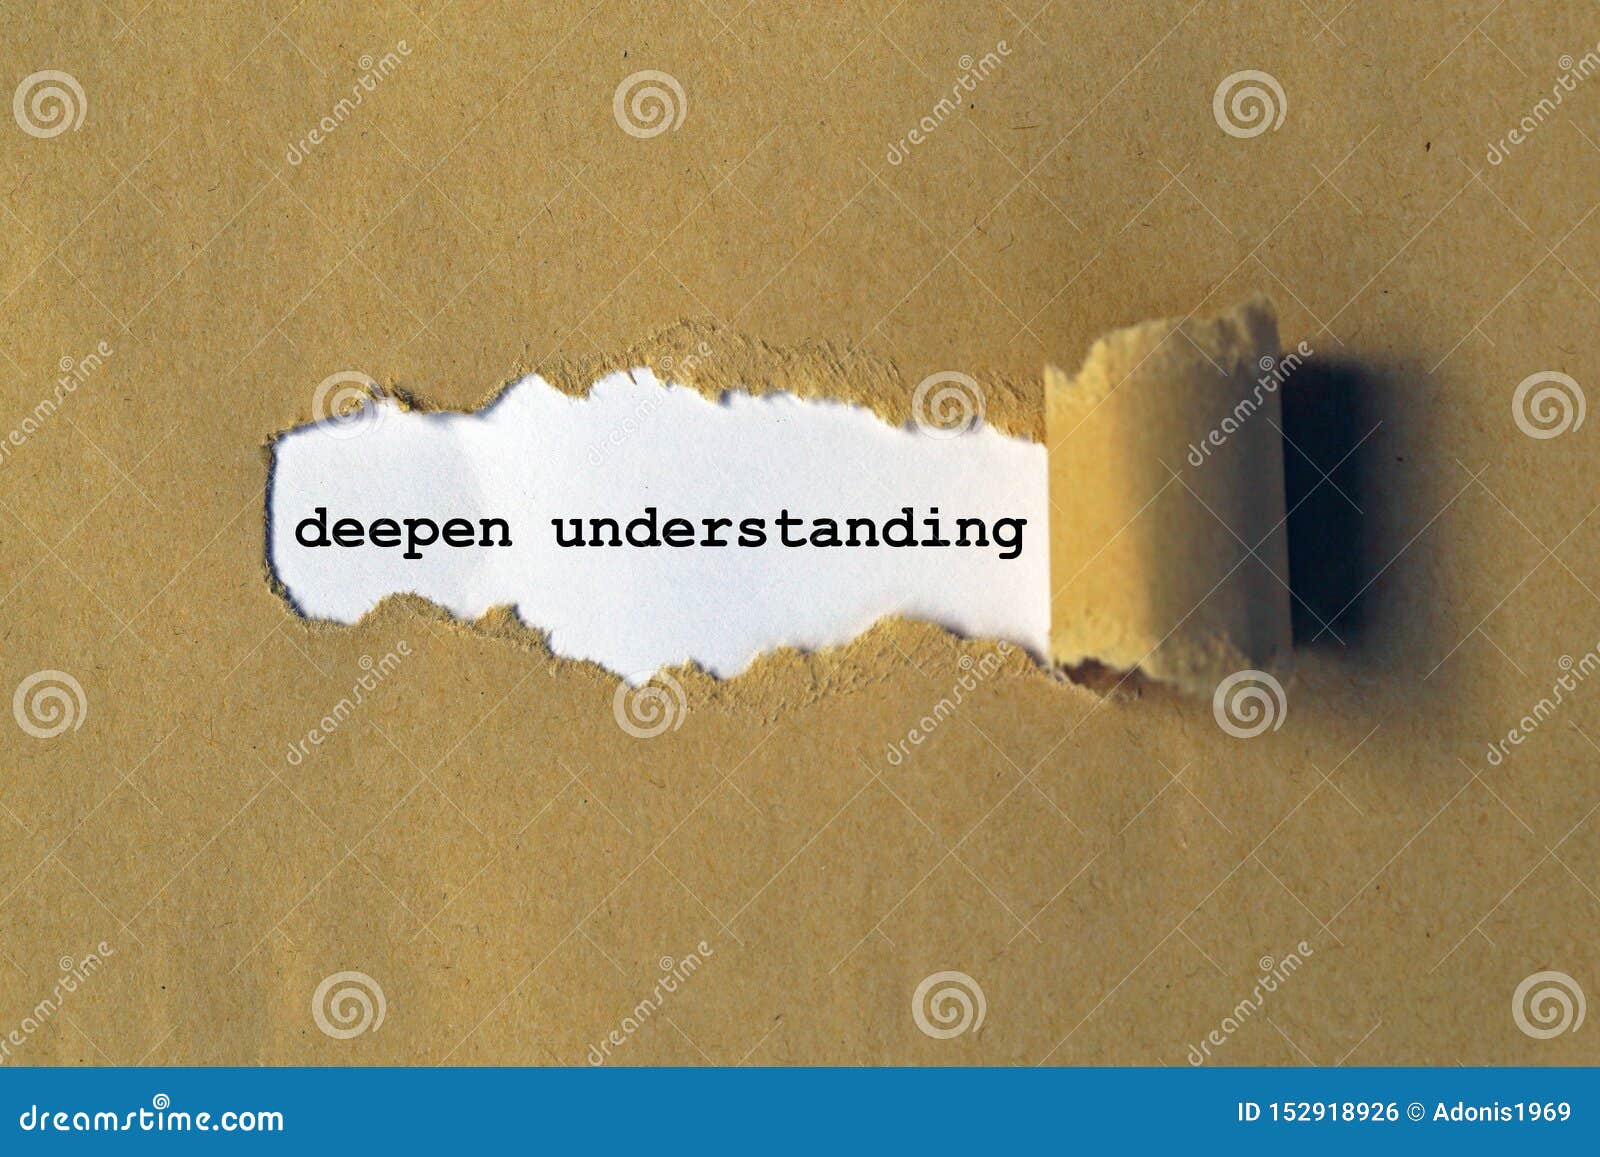 deepen understanding